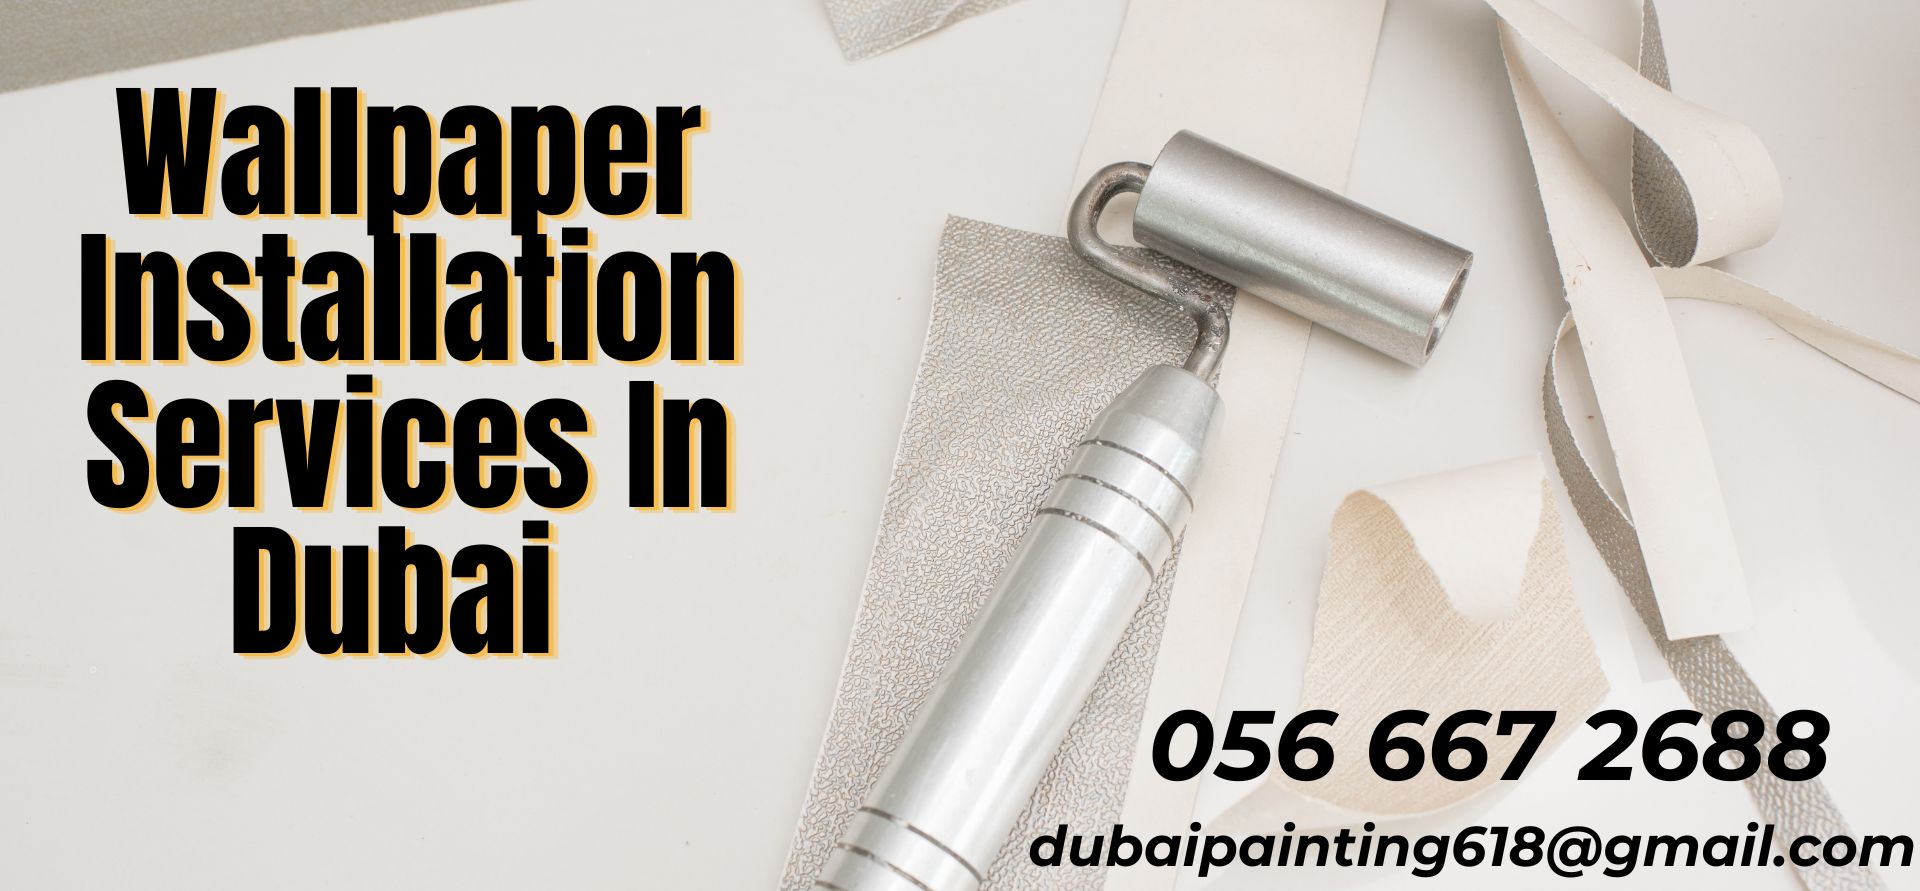 Wallpaper Installation Services In Dubai